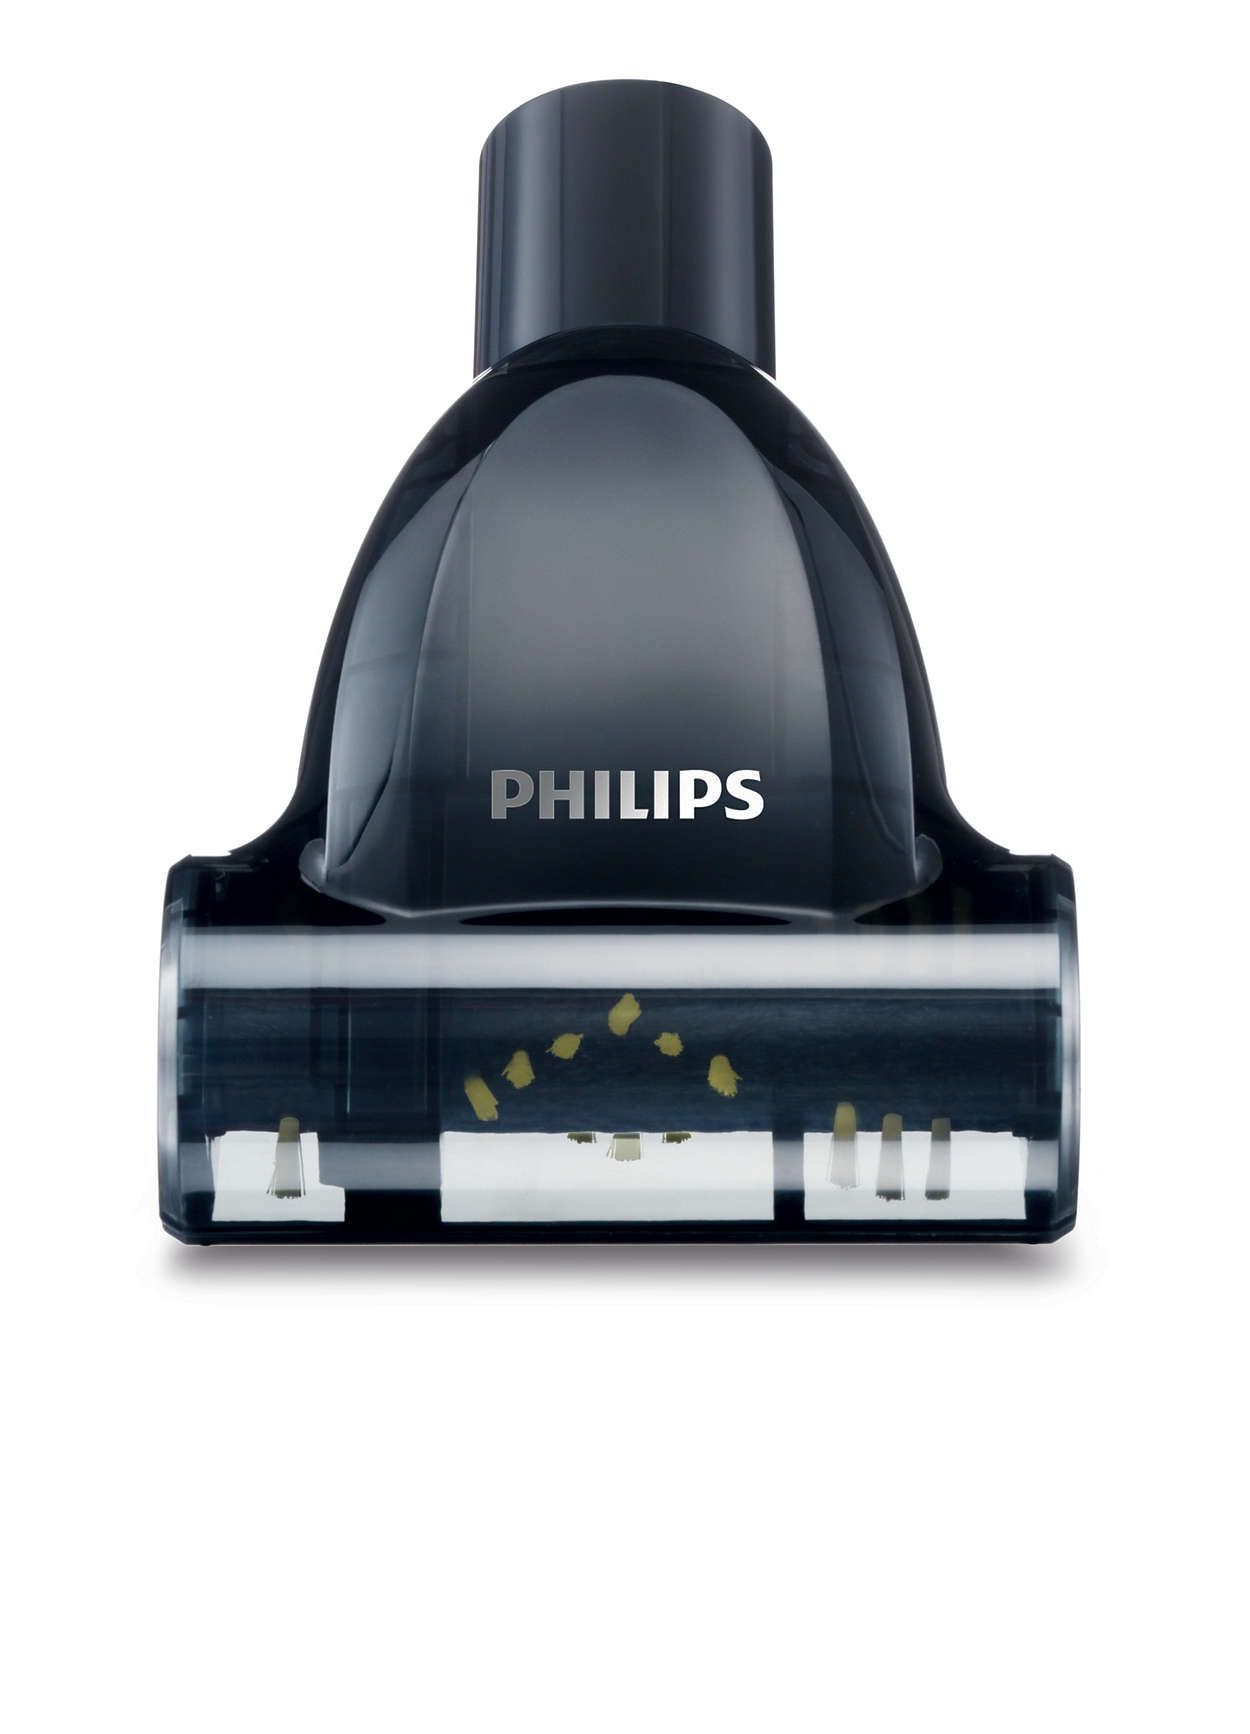 Турбощетка филипс. Пылесос Philips fc8455 POWERLIFE. Philips fc8455 POWERLIFE. Пылесос Philips fc8455/01. Филипс FC 8455 пылесос.